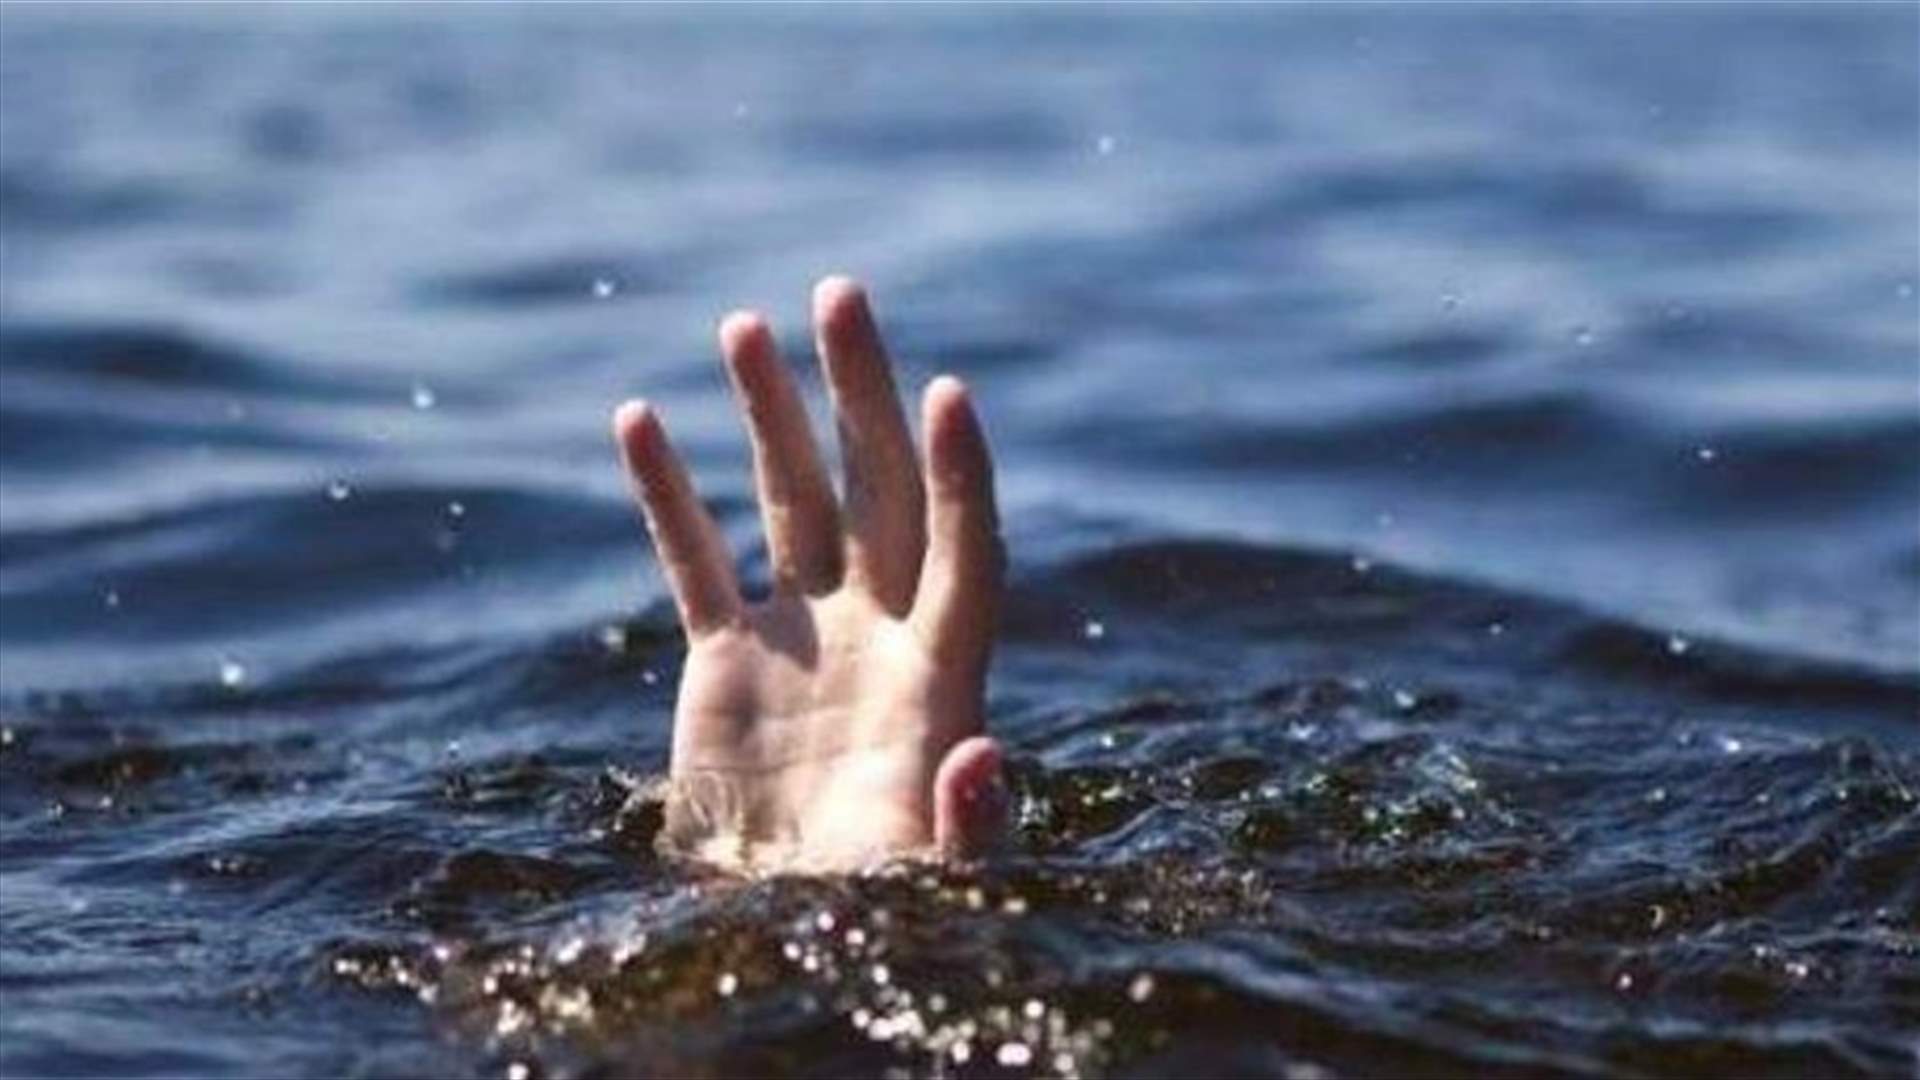 التيار البحري يجرف 4 أشخاص في السعديات: وفاة طفلة واصابة شخص وفقدان آخرَين